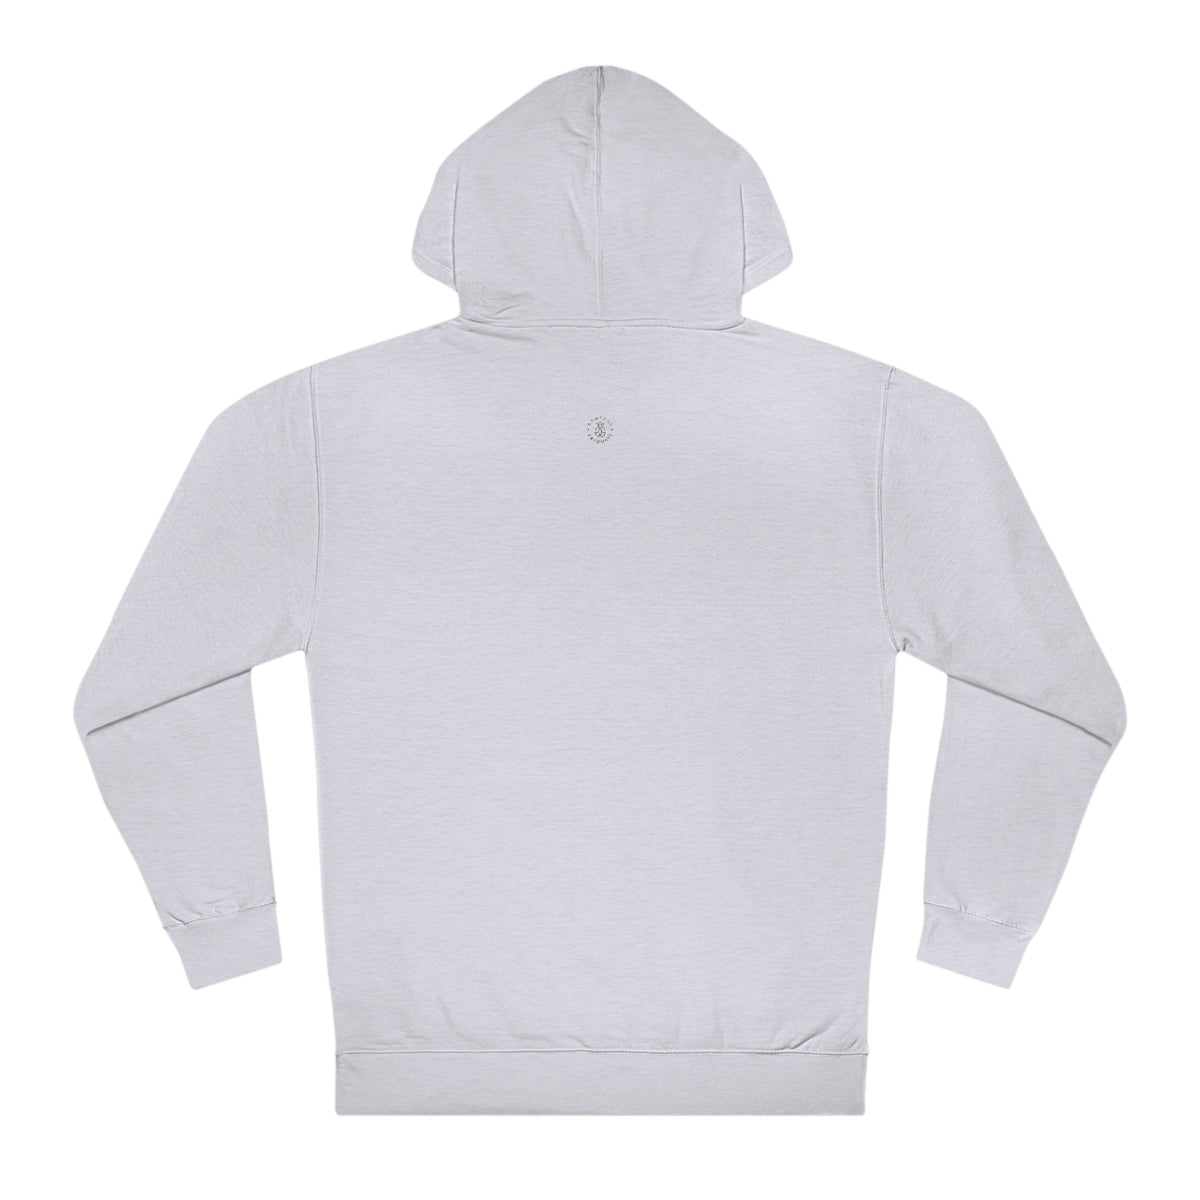 Nebraska Hooded Sweatshirt - GG - ITC